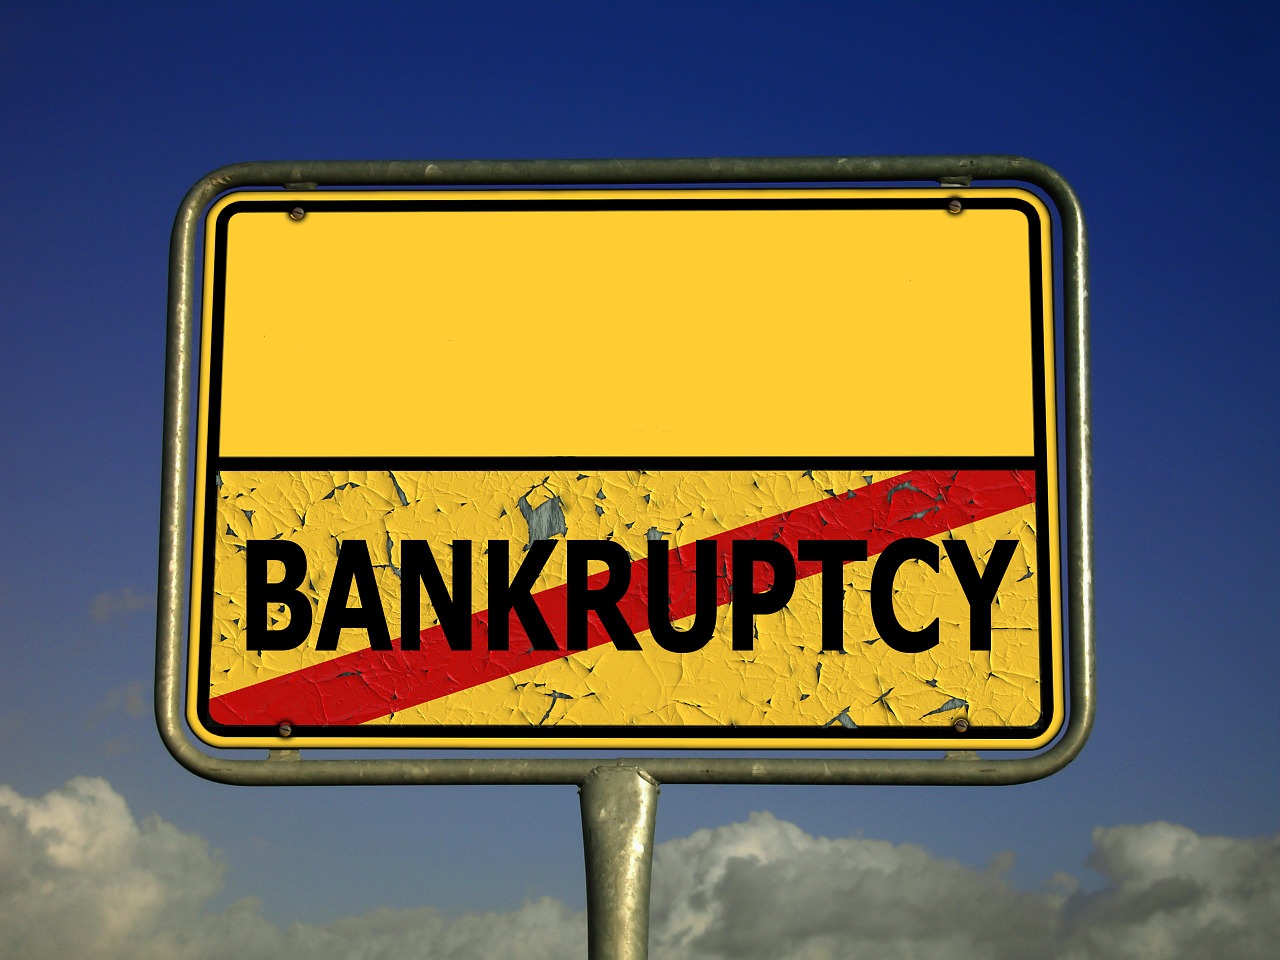 bankrupcy